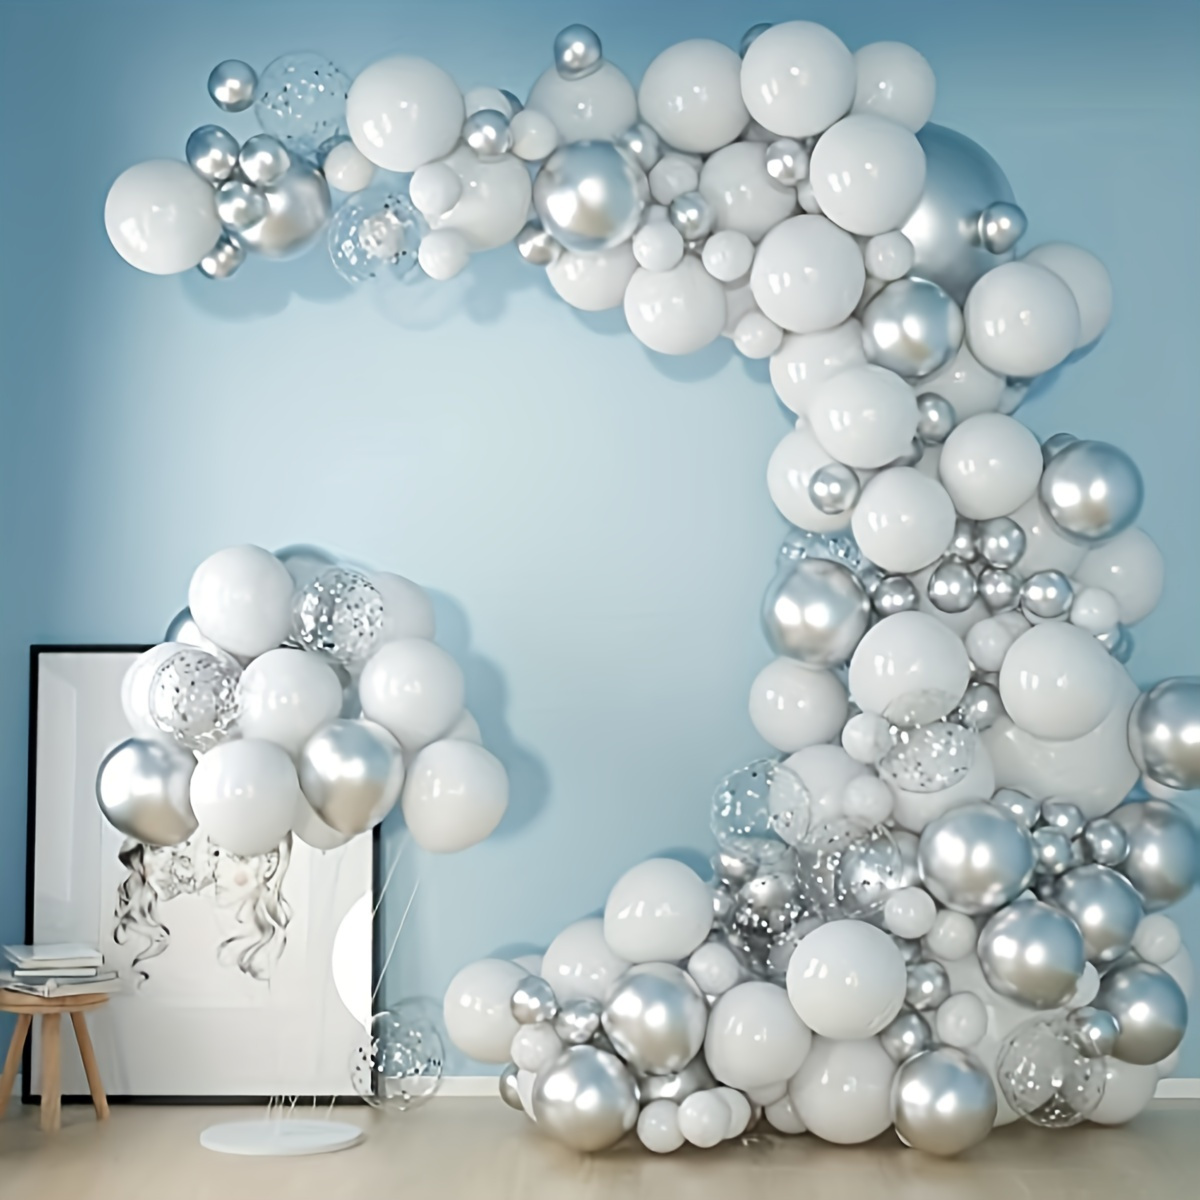 Globos de colores estándar 16-42cm qualatex en globos para decorar.